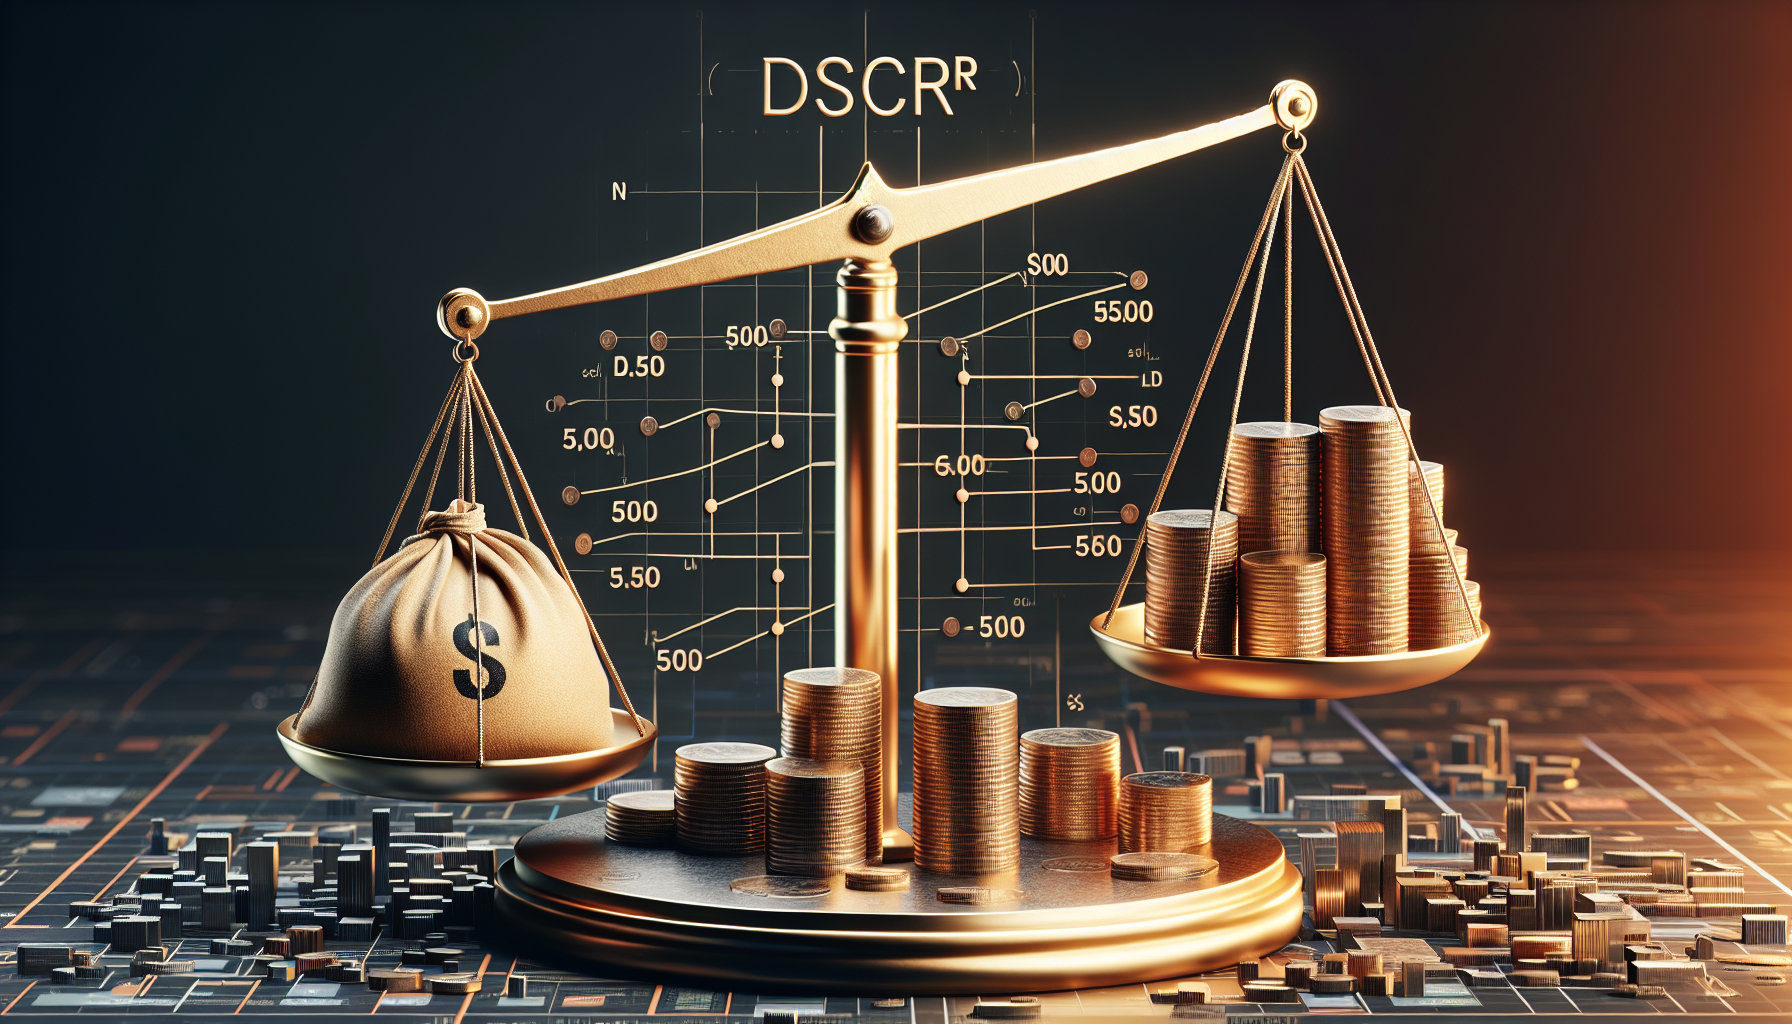 Visual representation of the DSCR formula